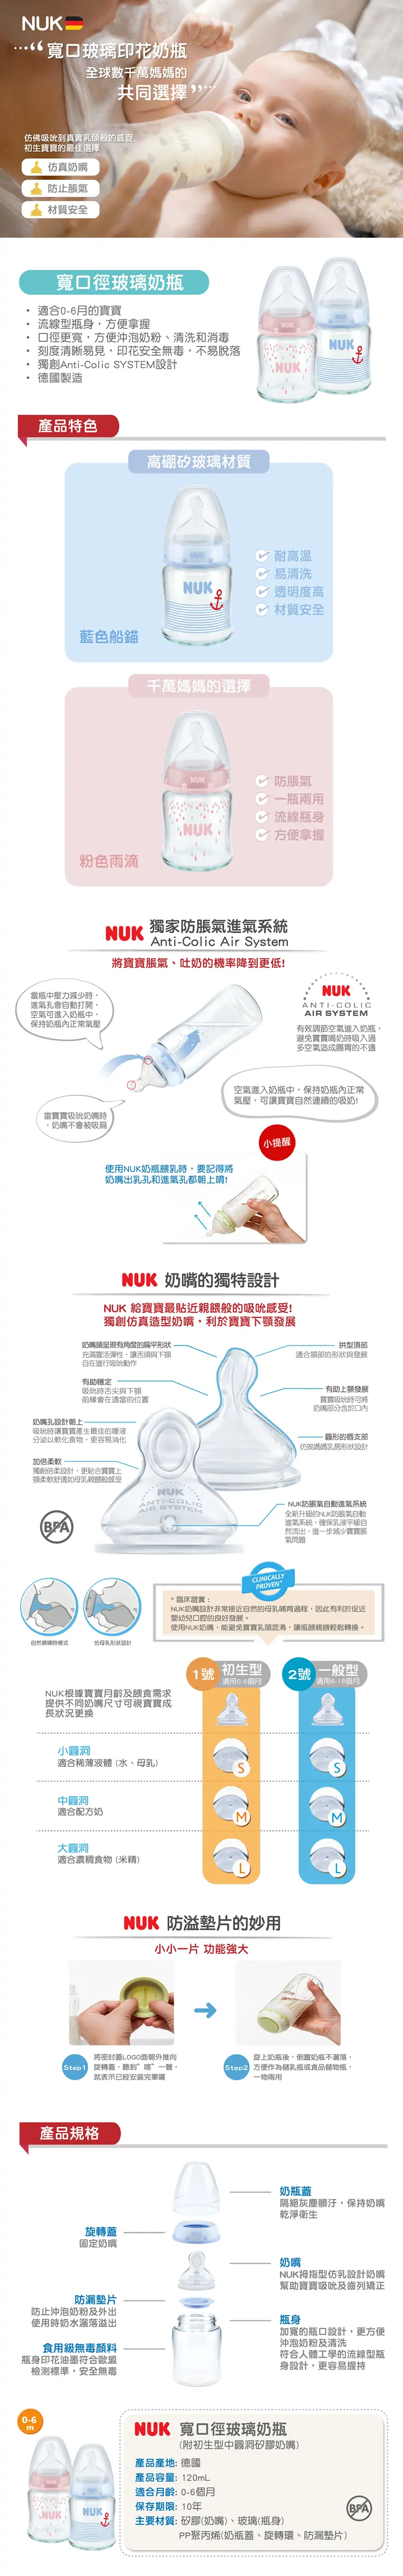 Nuk Premium Choice 玻璃寬口徑奶瓶